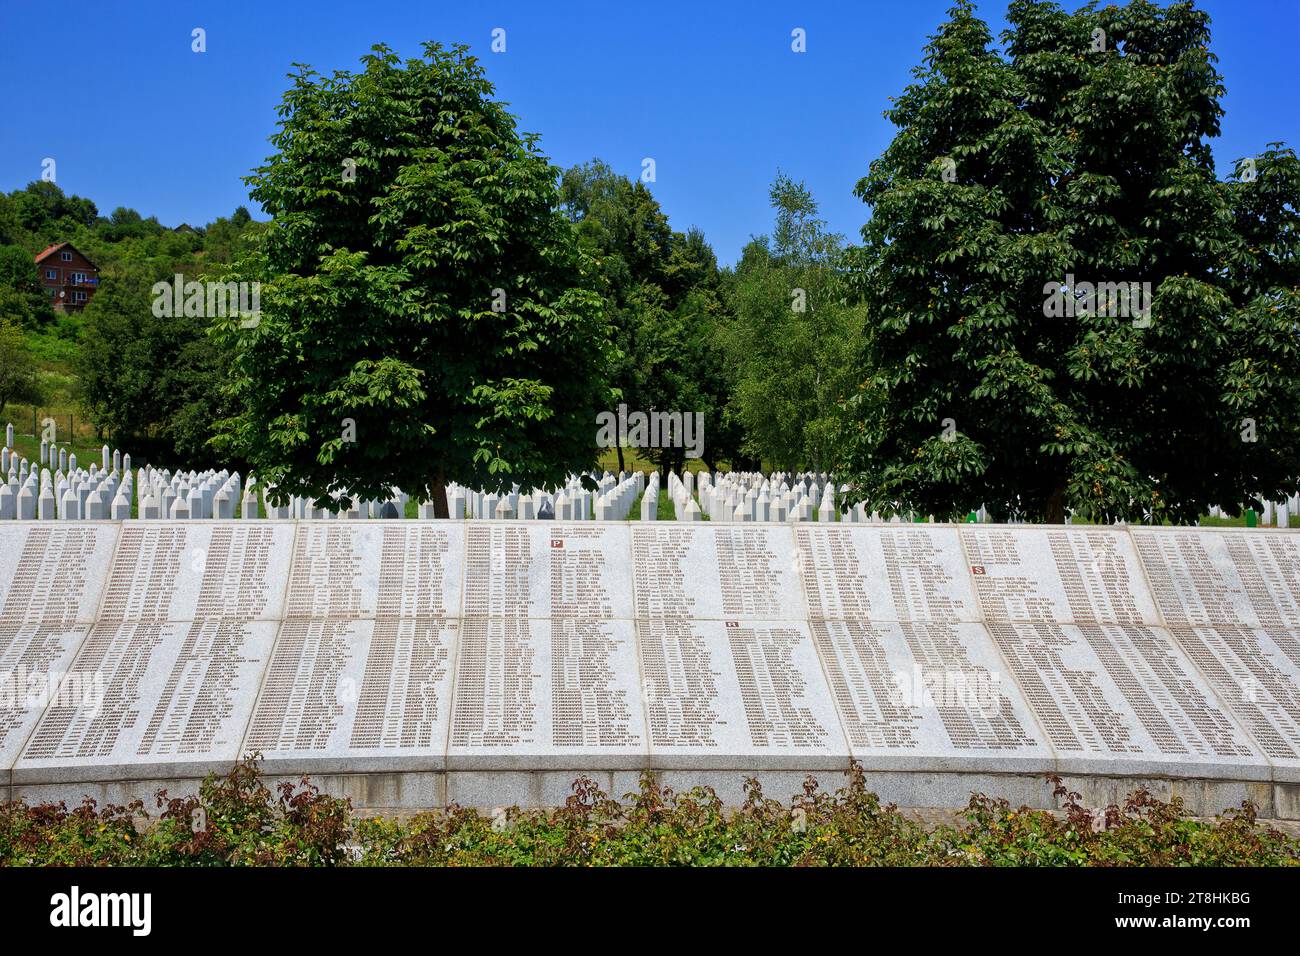 Liste mit den Namen der muslimischen Opfer am Srebrenica Völkermorddenkmal (1995) in Potocari, Bosnien und Herzegowina Stockfoto